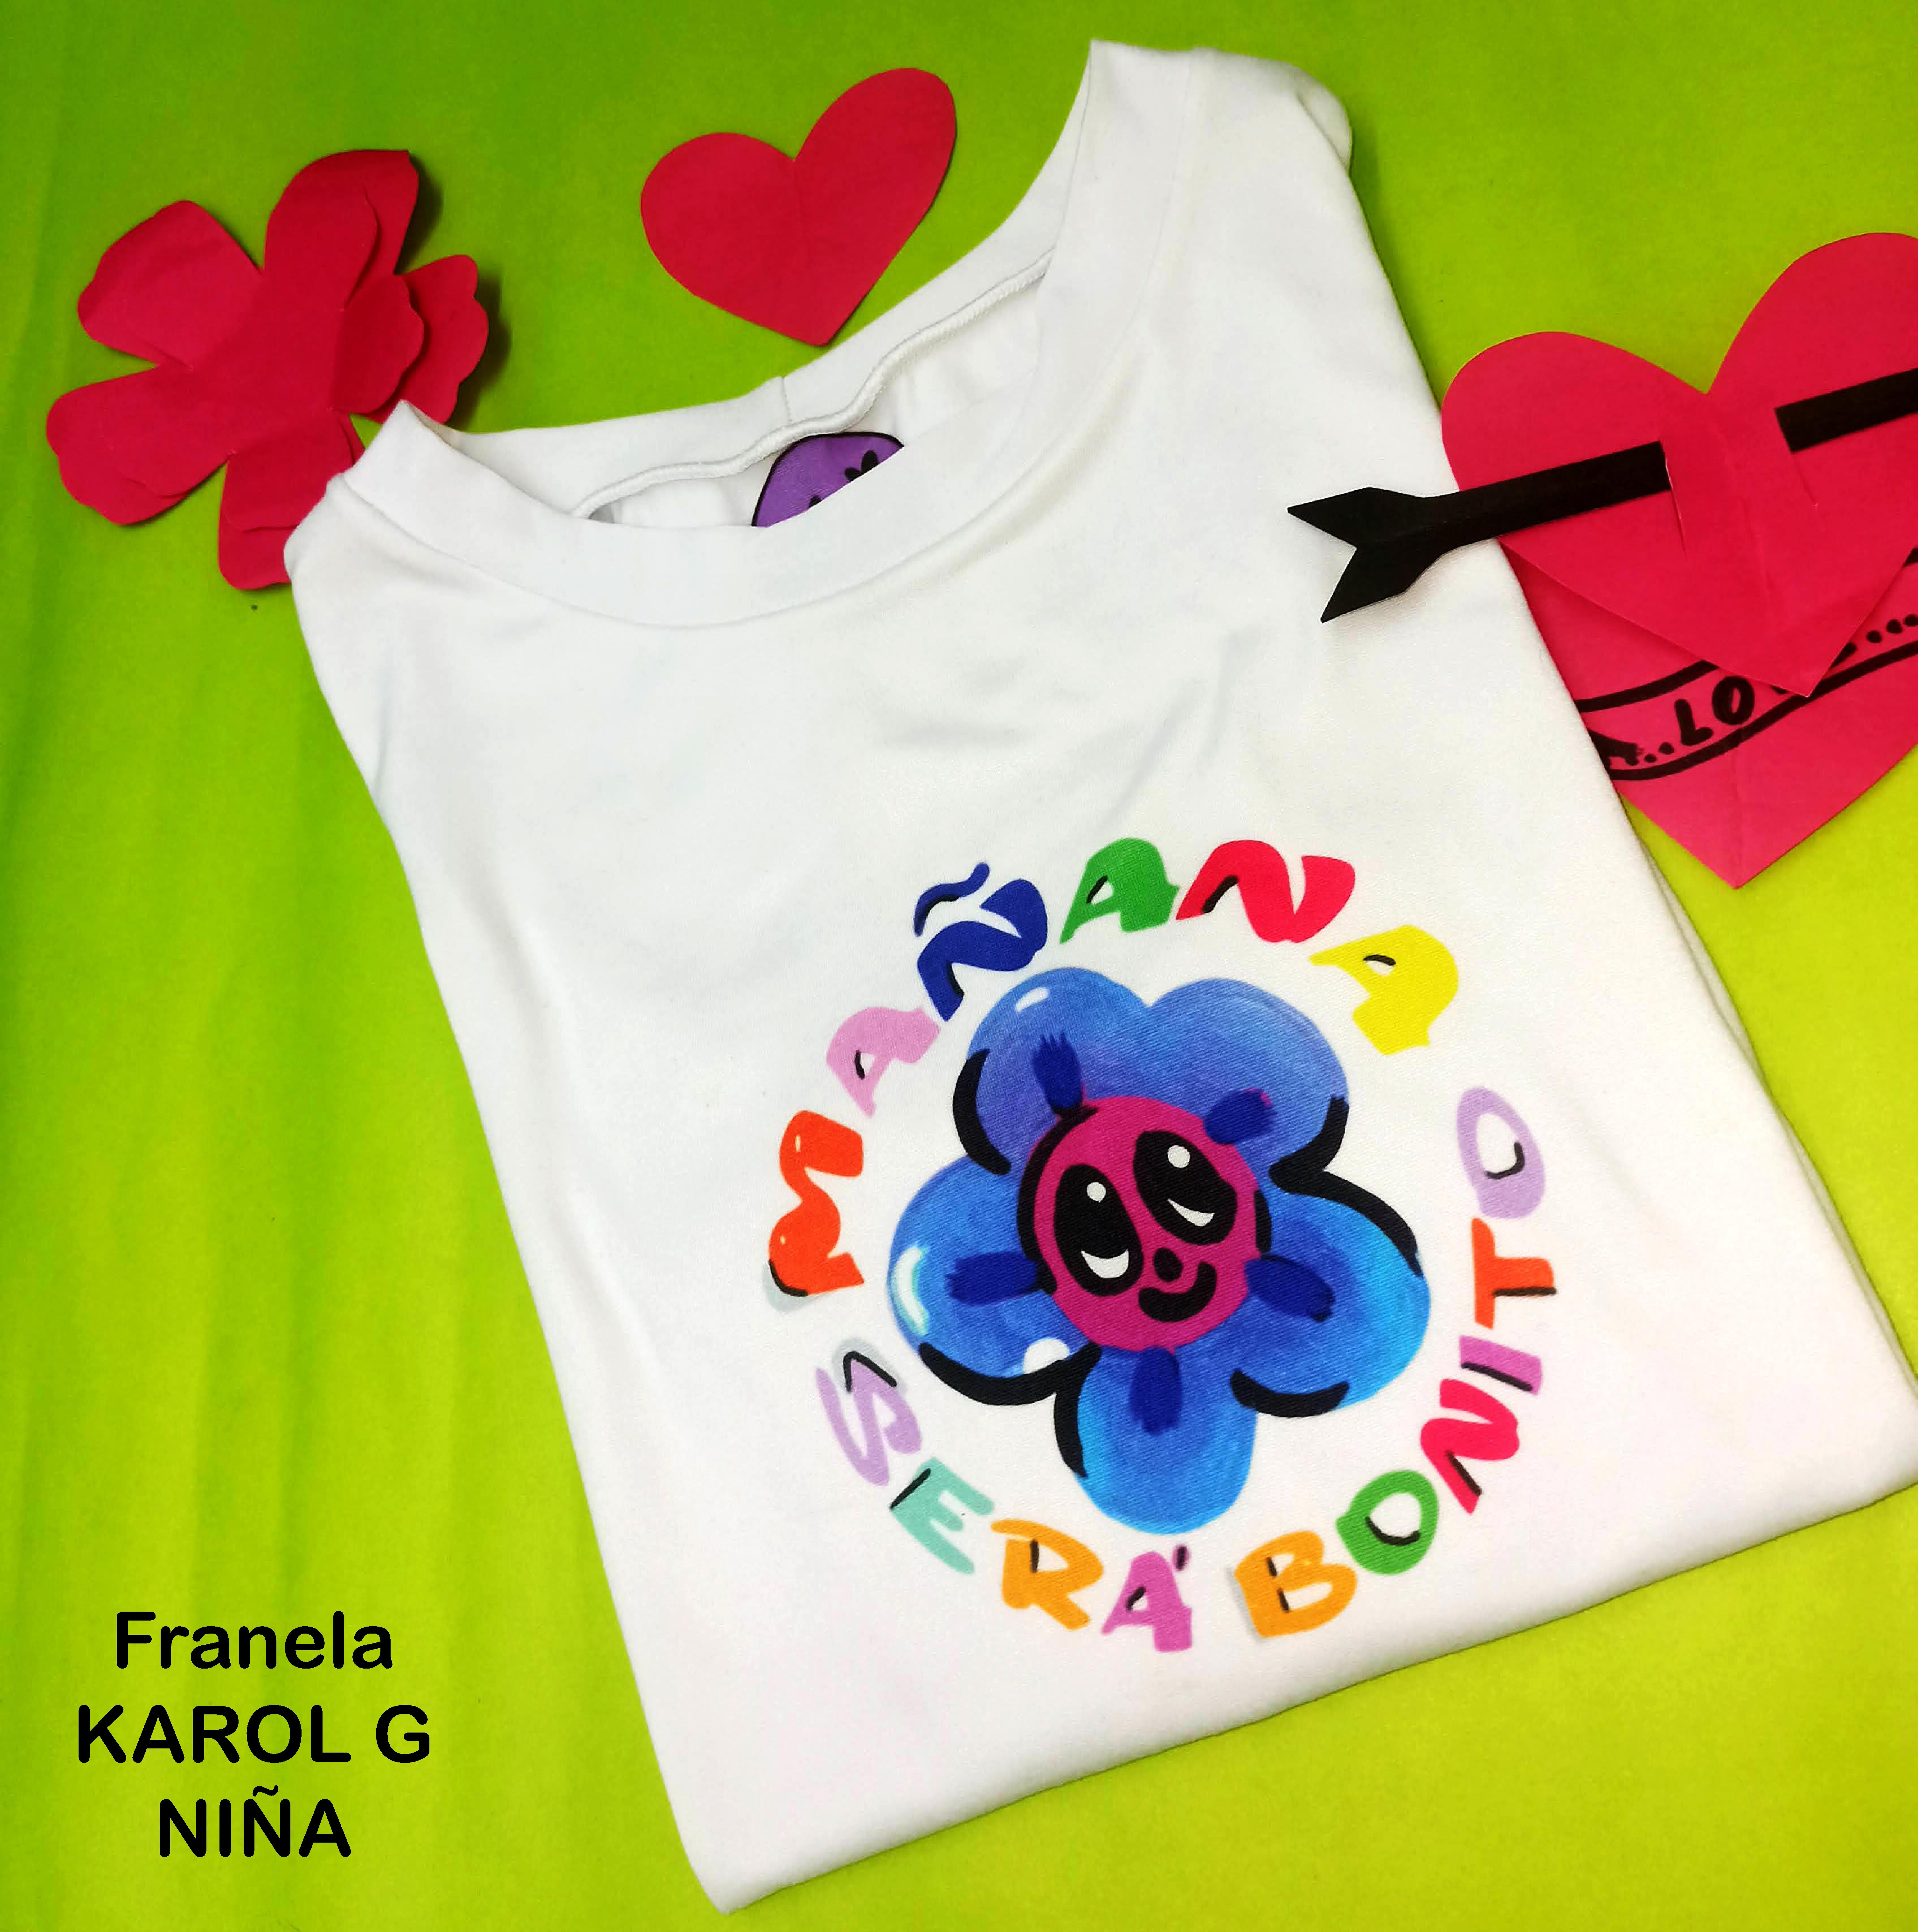 Camiseta Karol G ref 3